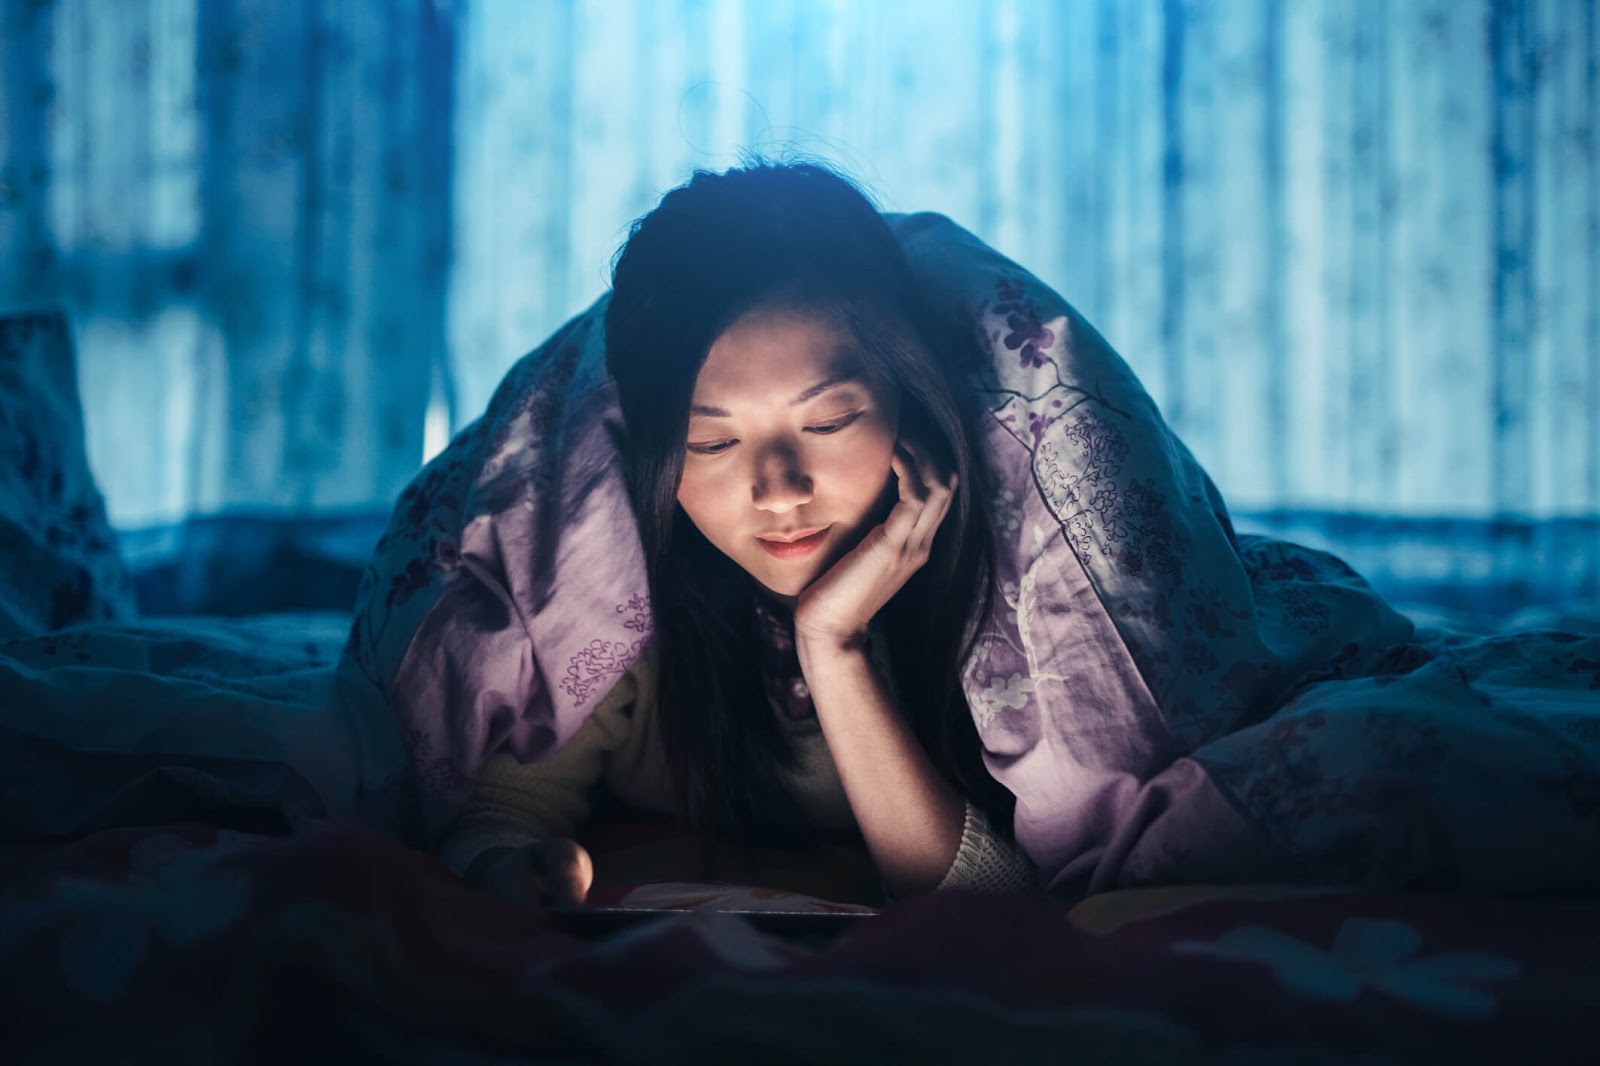  Thức khuya là nguyên nhân dẫn đến rối loạn nội tiết tố và ảnh hưởng đến số đo cả 3 vòng